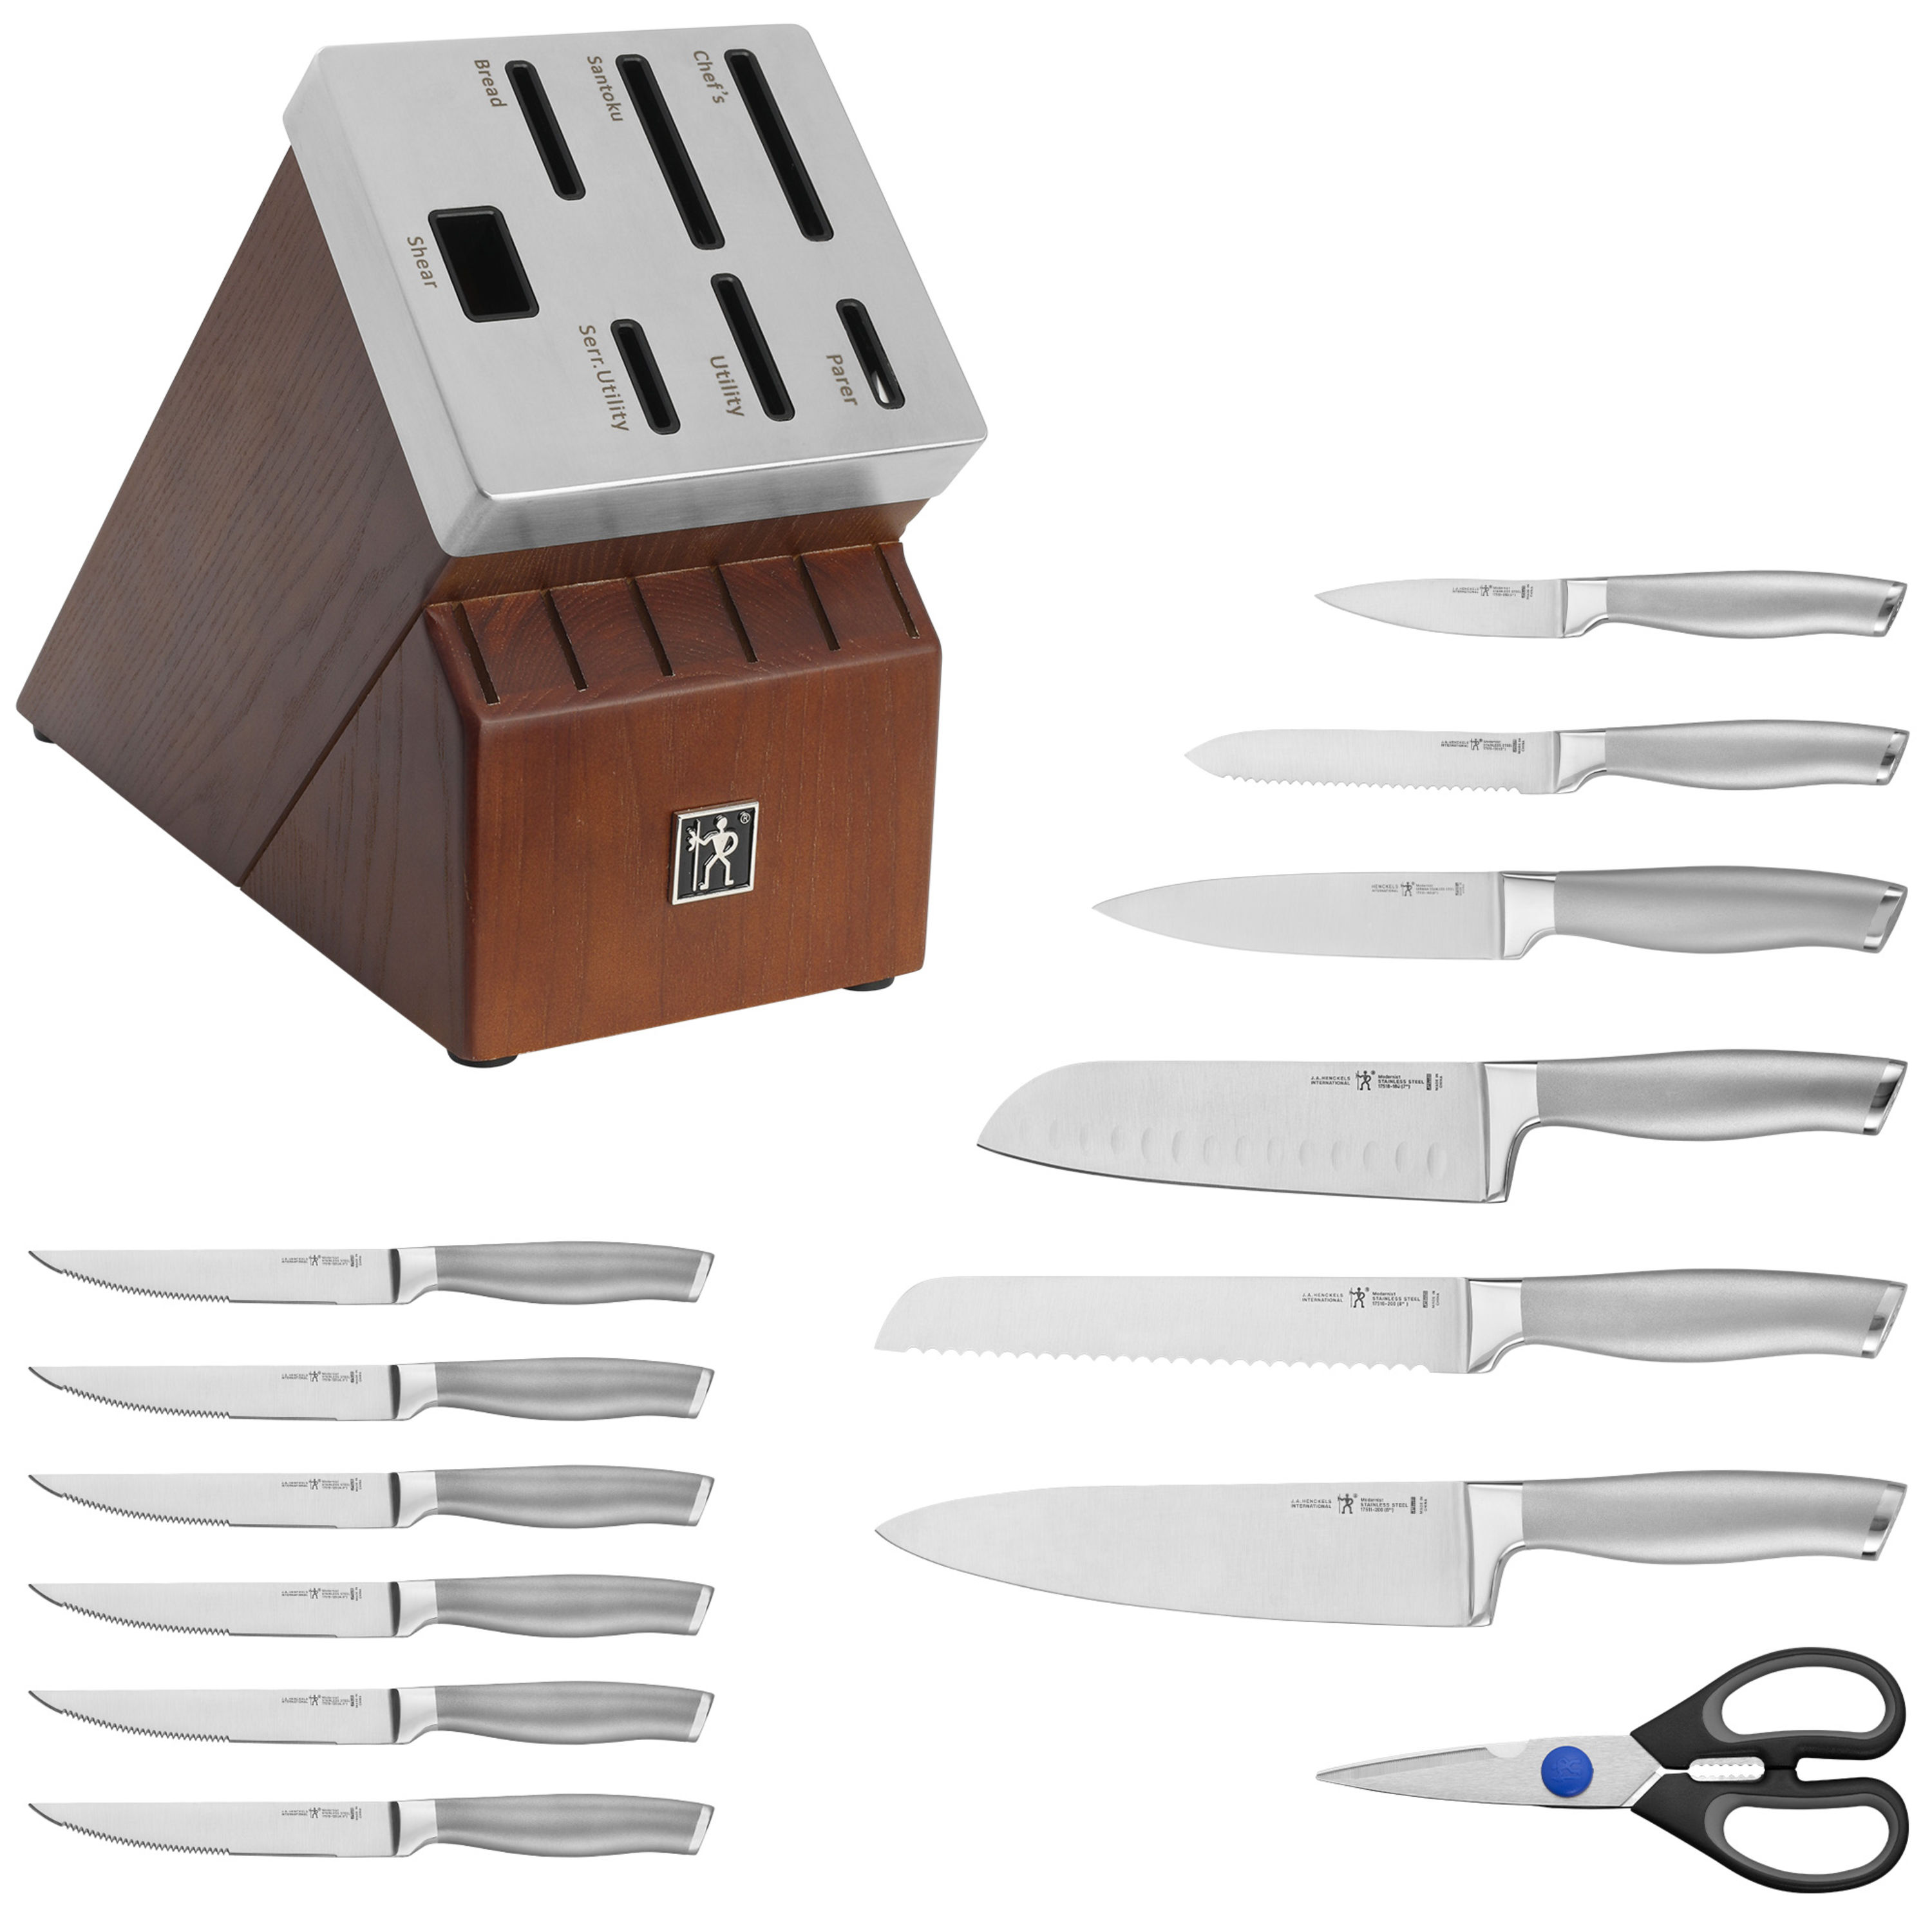 Henckels EverEdge Solution 14-pc, Knife Block Set